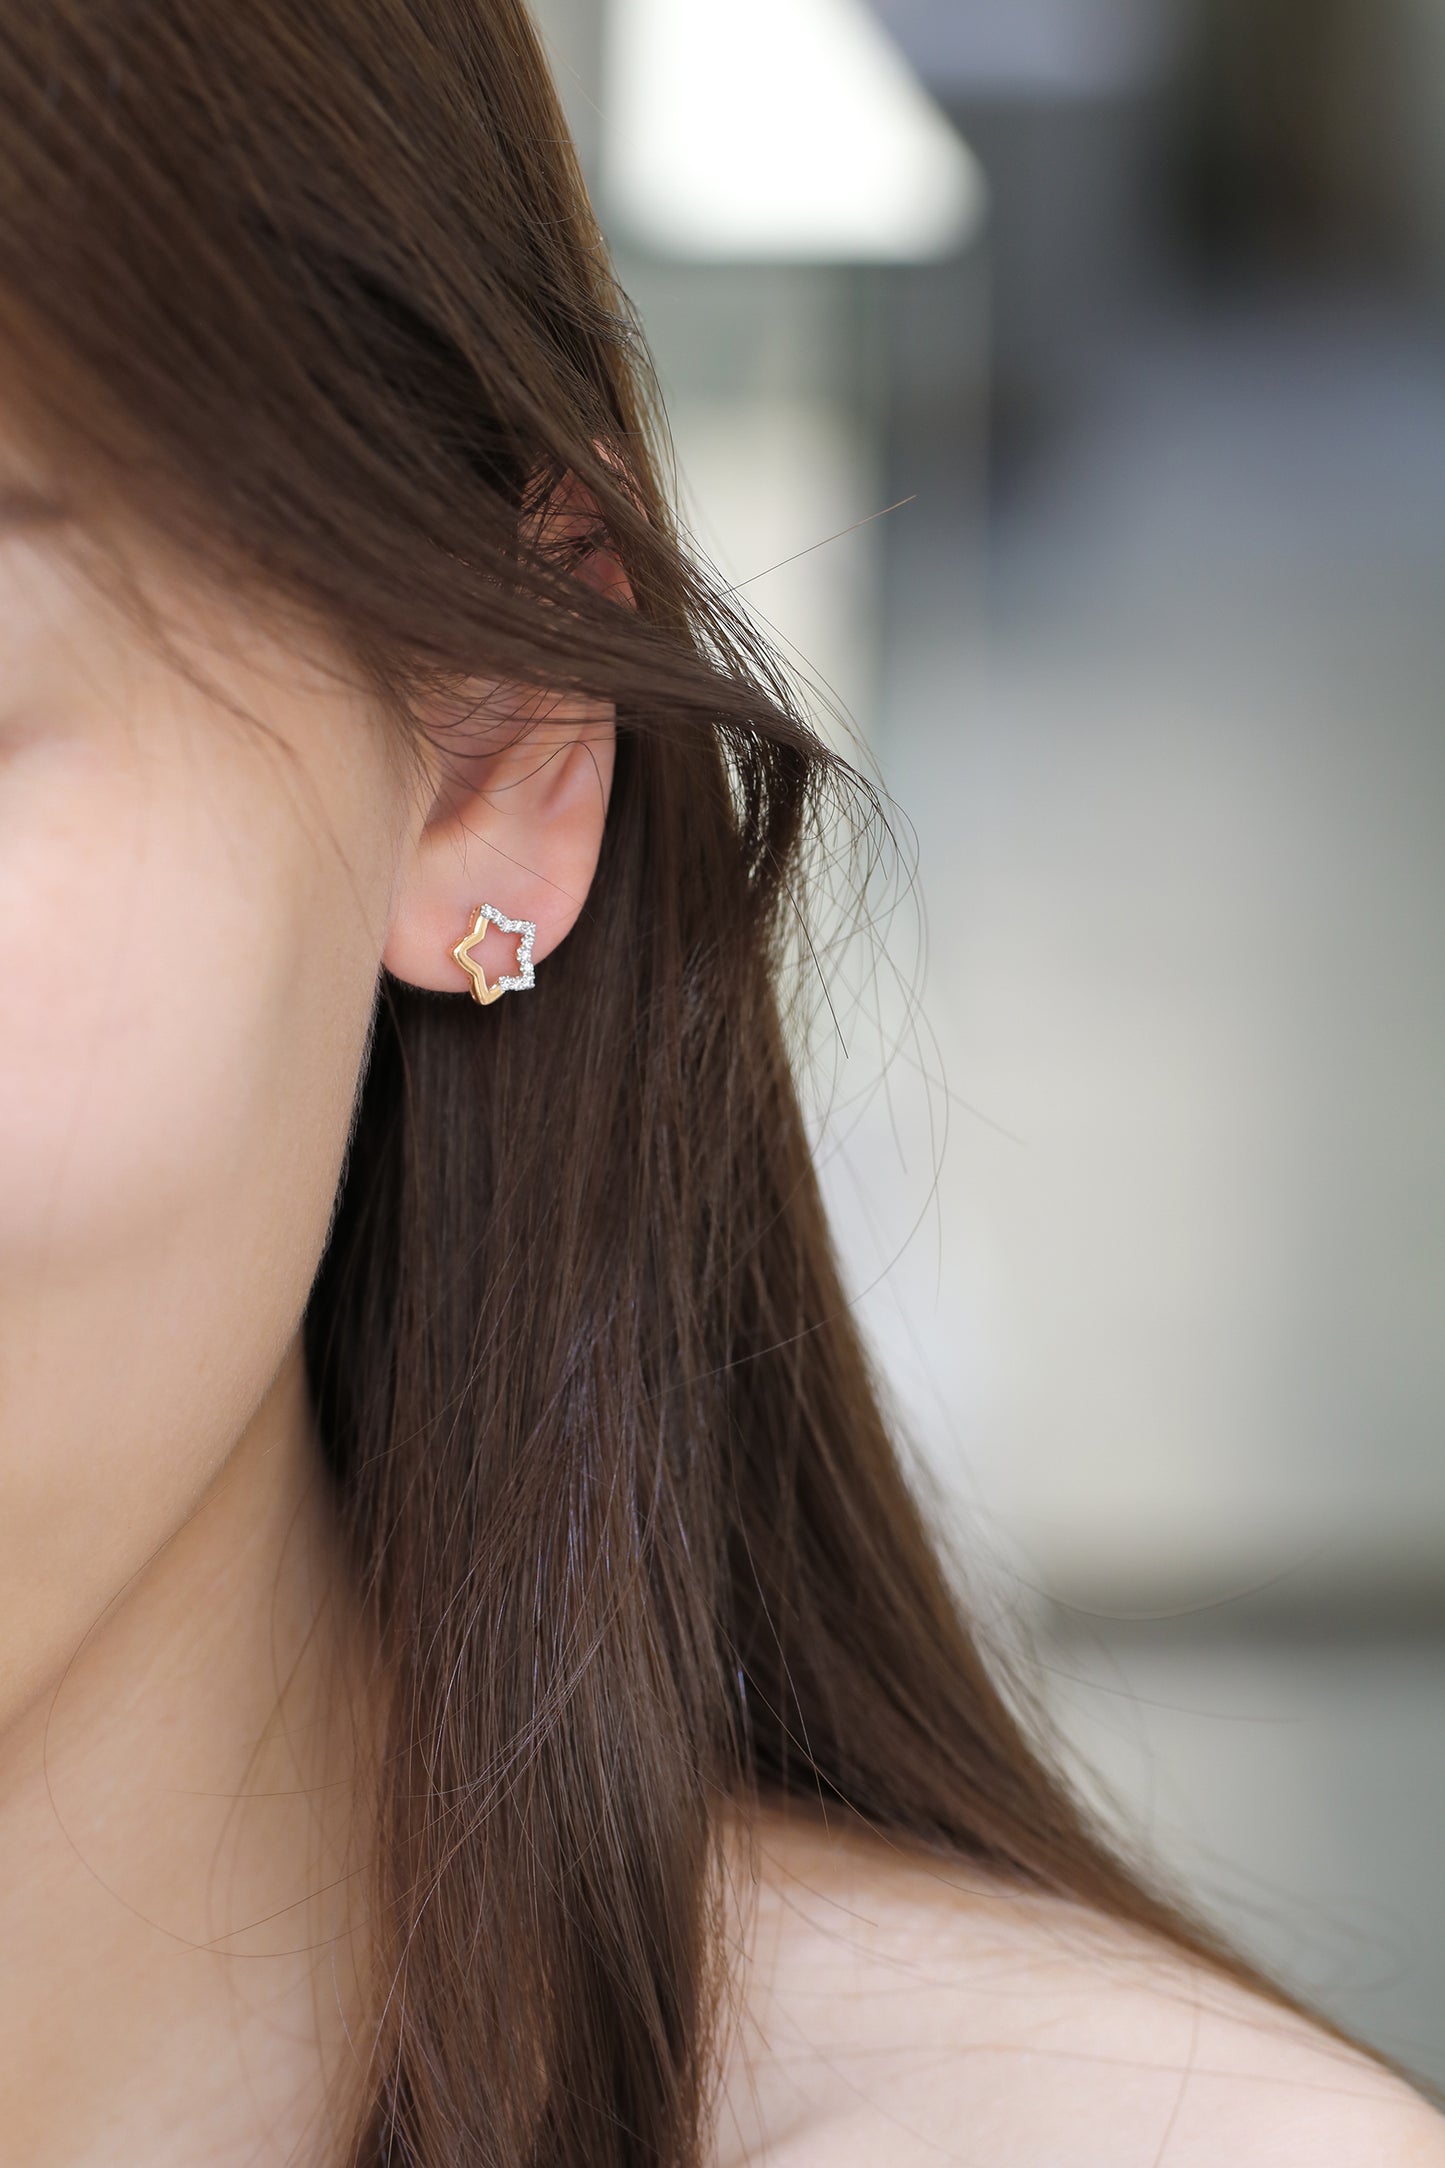 18k Rose Gold Star Diamond Earrings, Pair